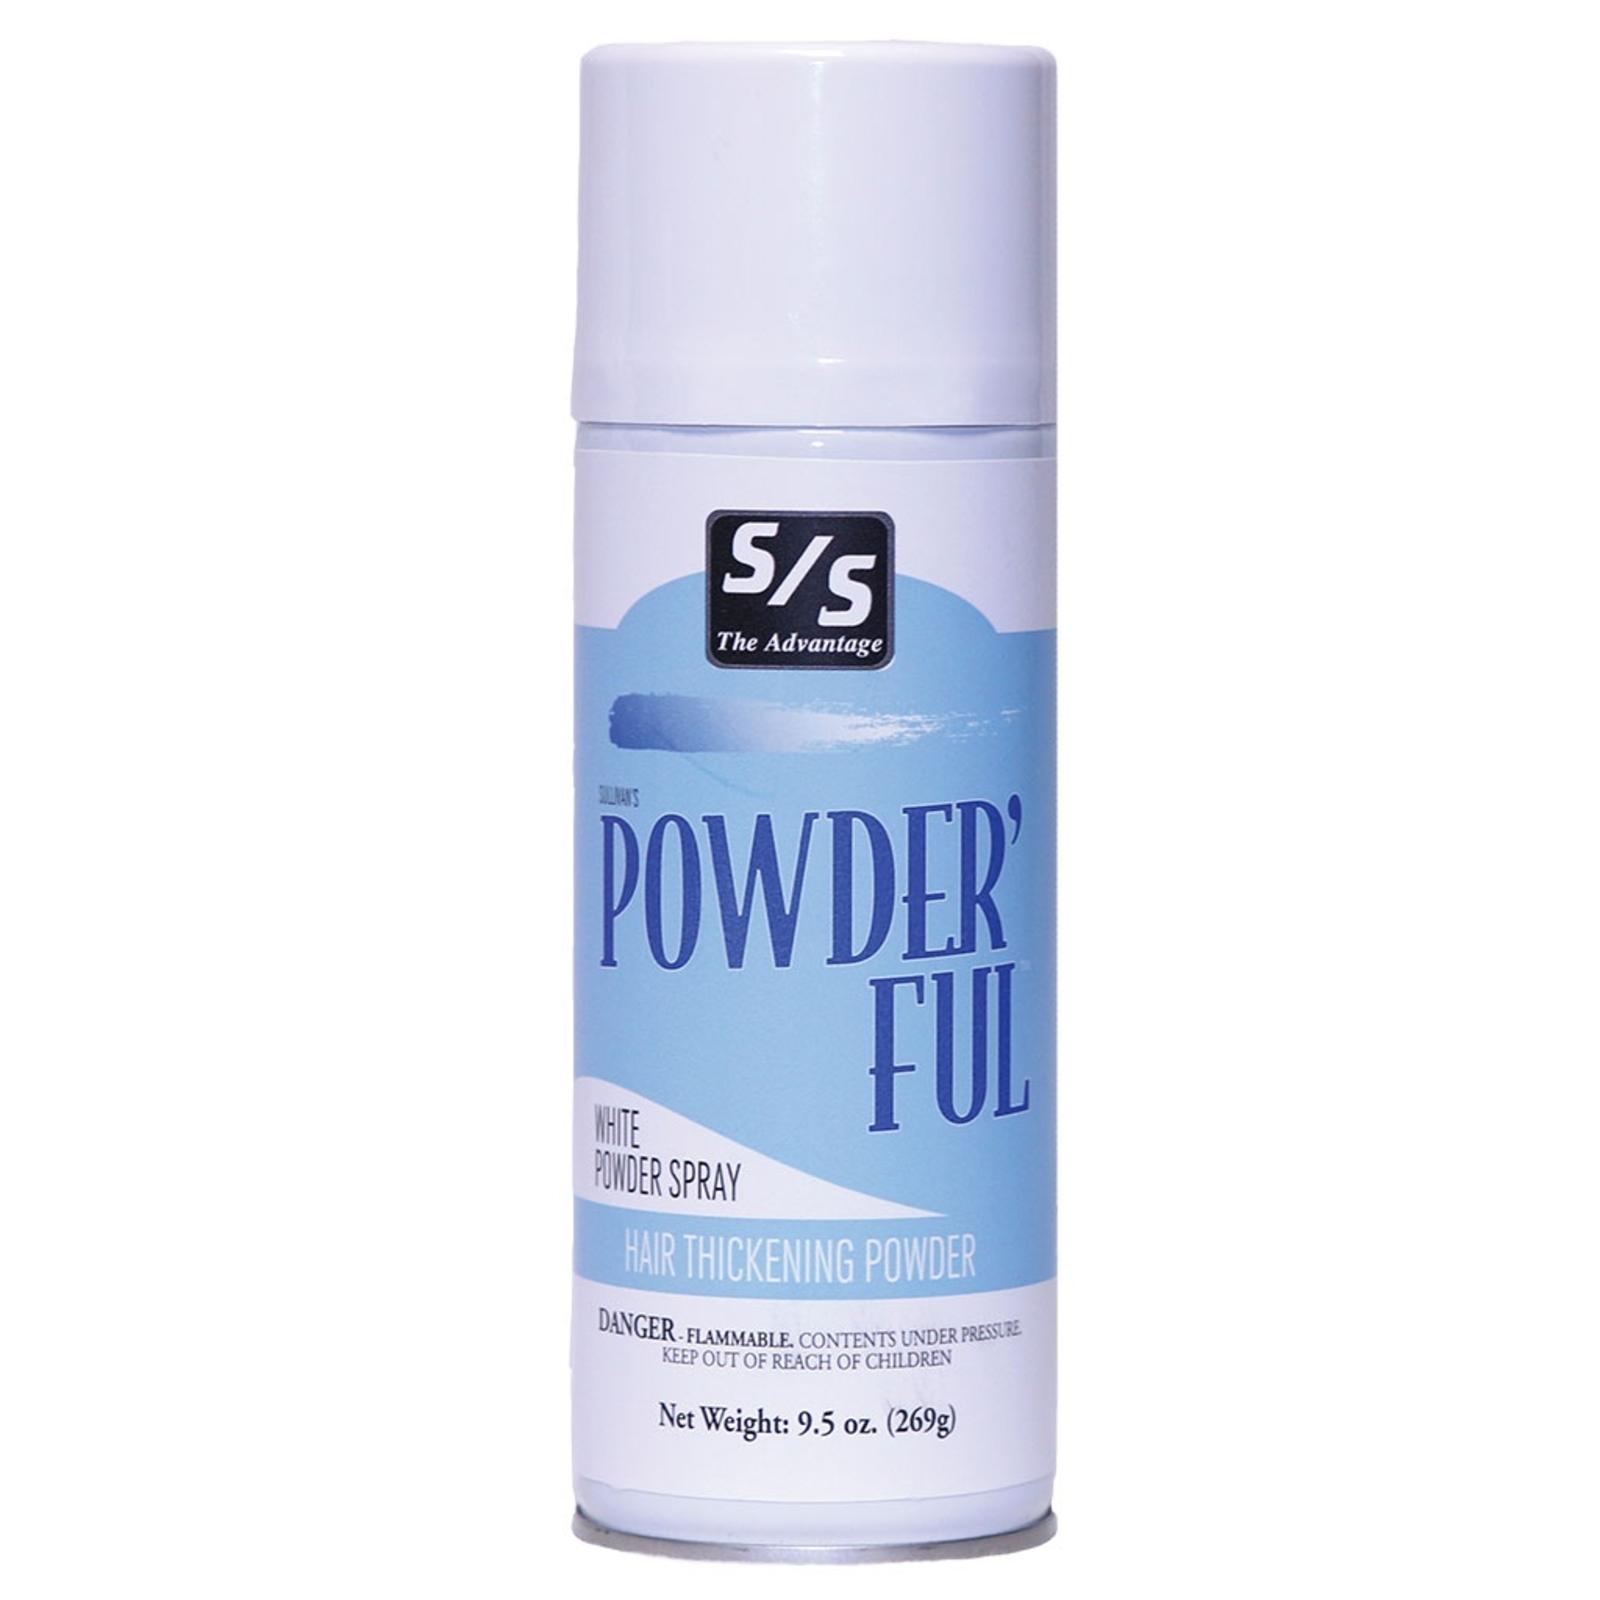 Sullivan's Powder'ful Hair Thickening Powder